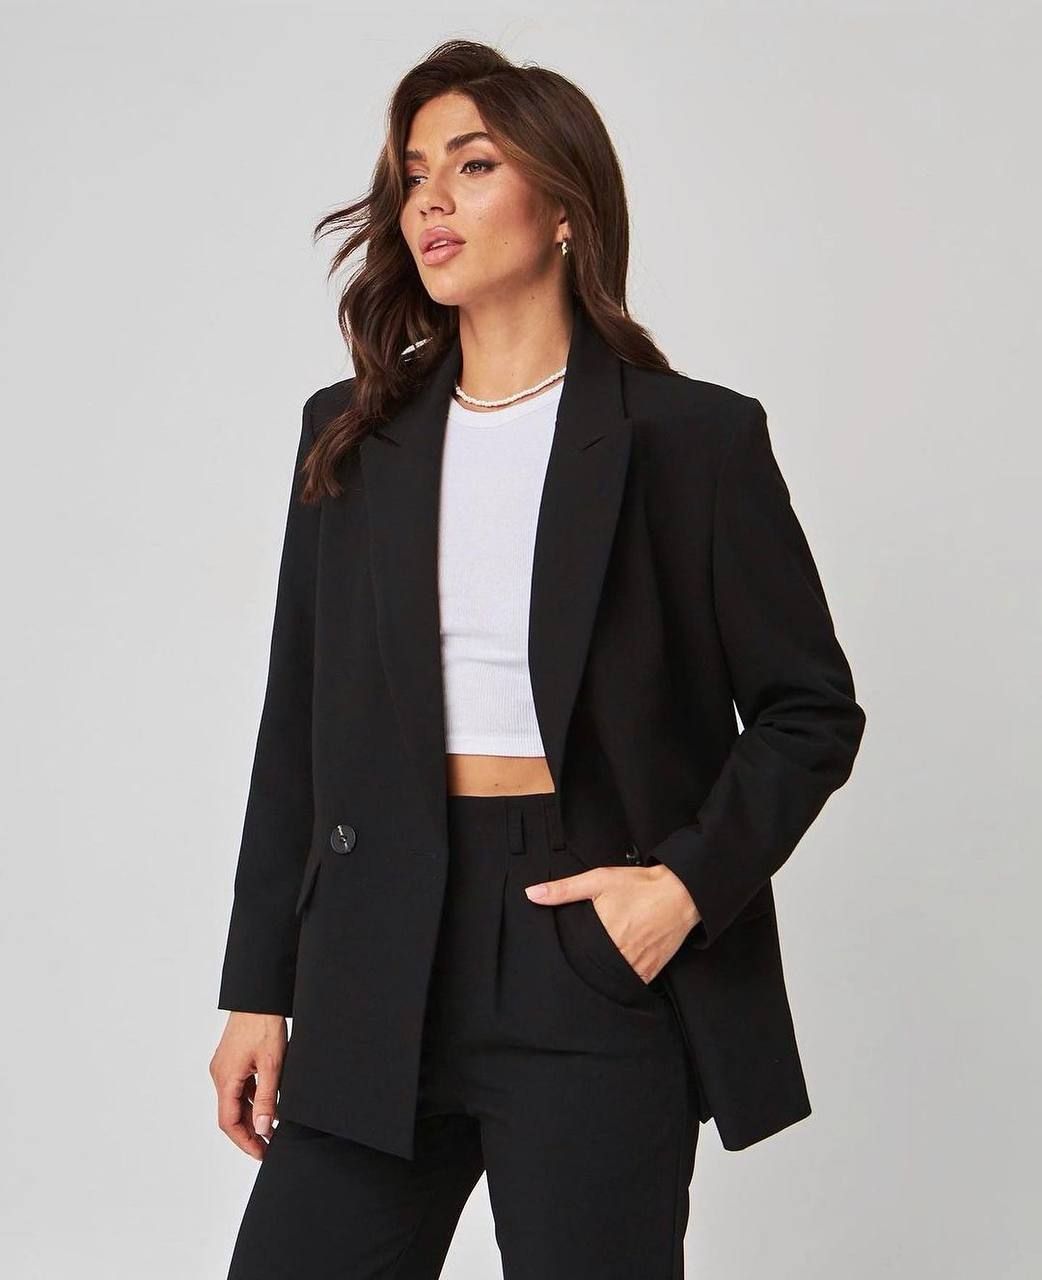 Пиджак классический двубортный черный, Черный, XS